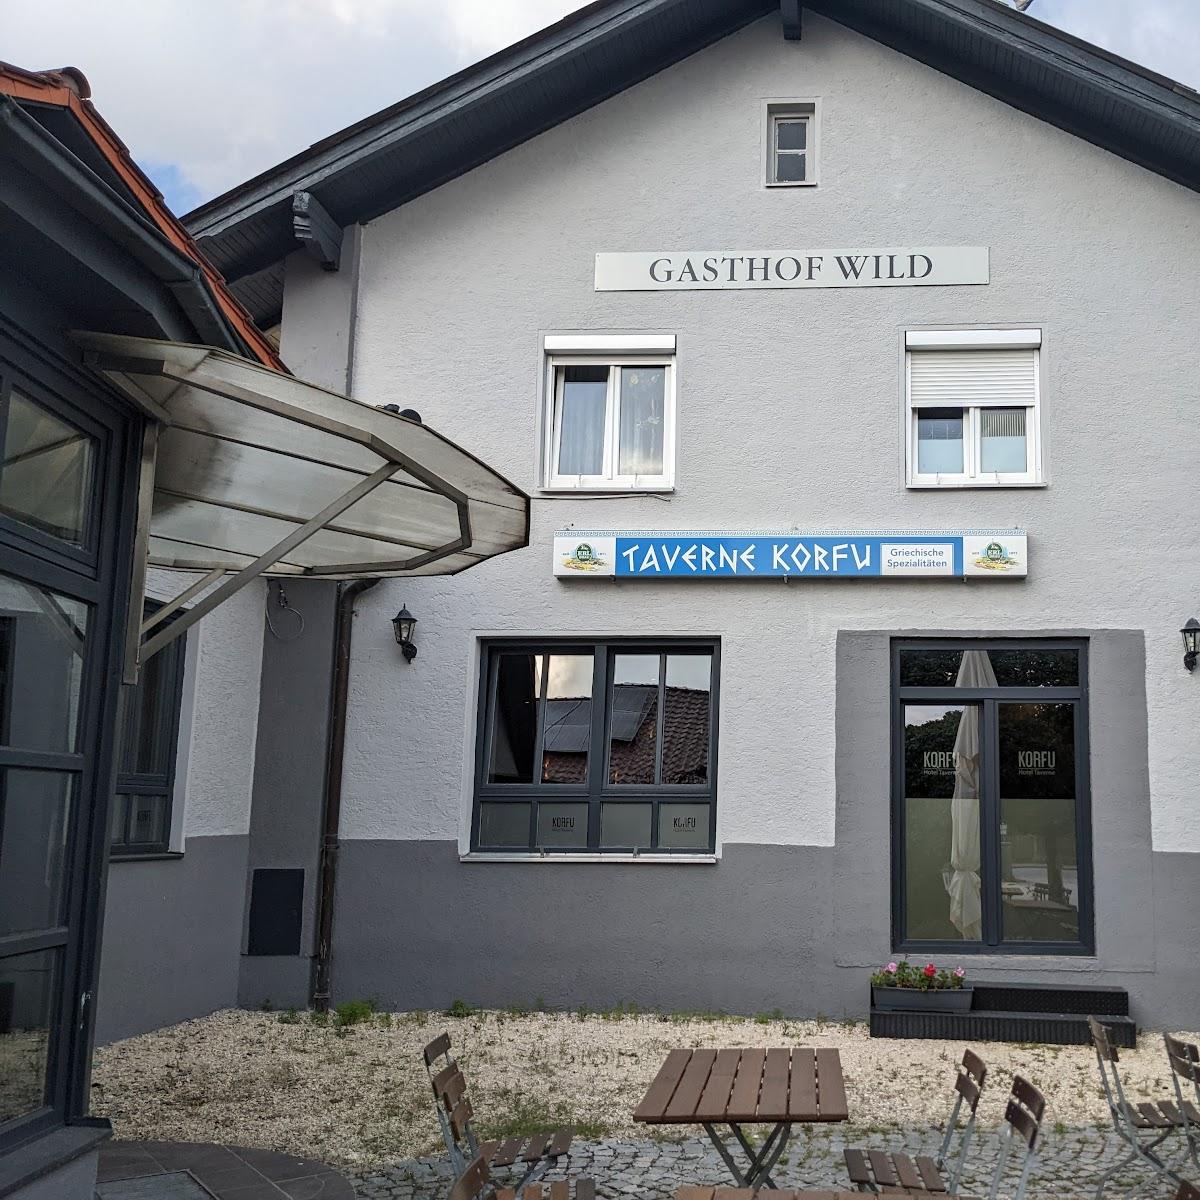 Restaurant "Hotel Taverne Korfu" in Geiselhöring